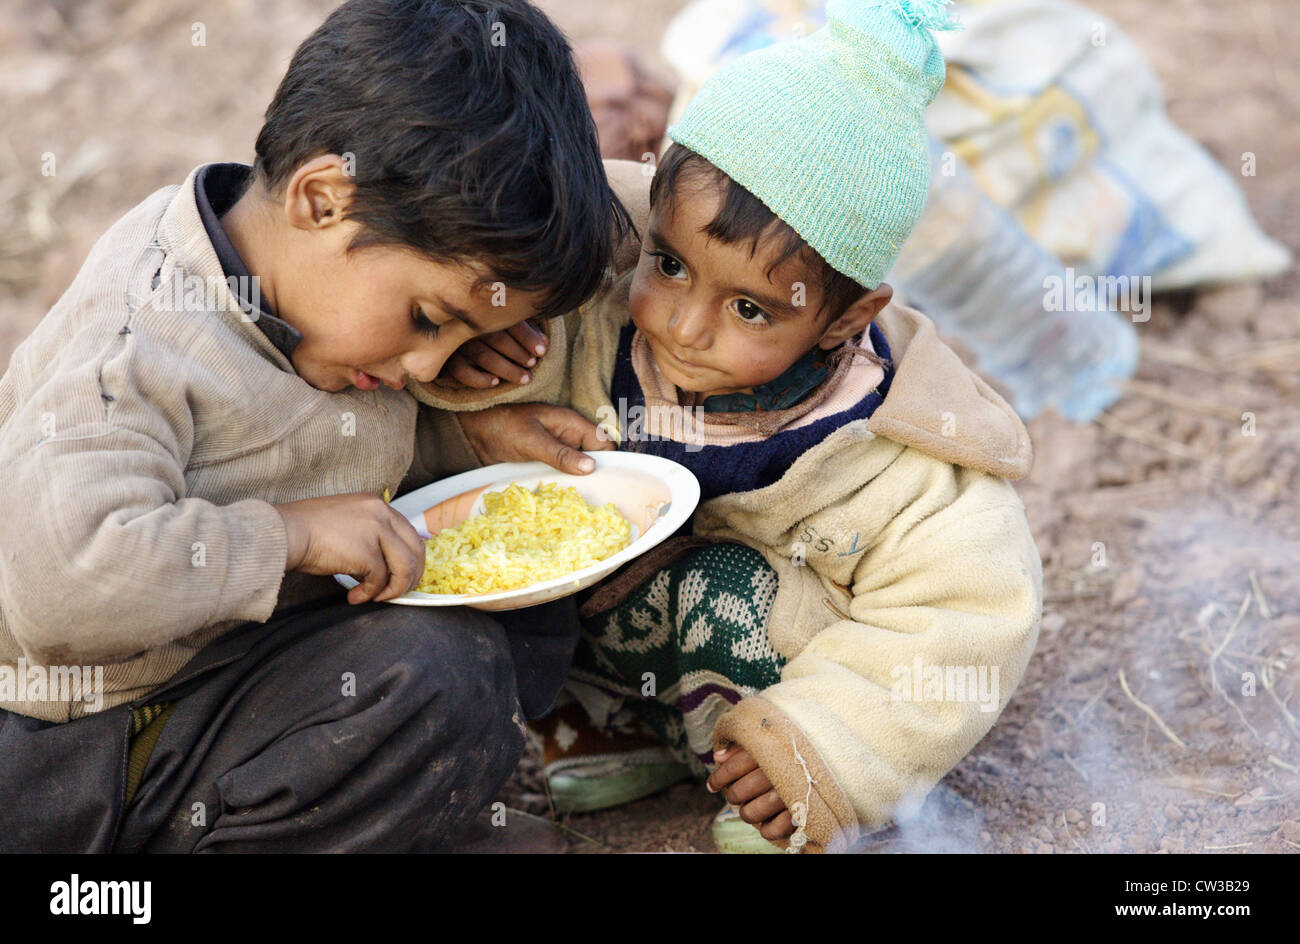 Children in the earthquake zone Muzaffarabad Stock Photo